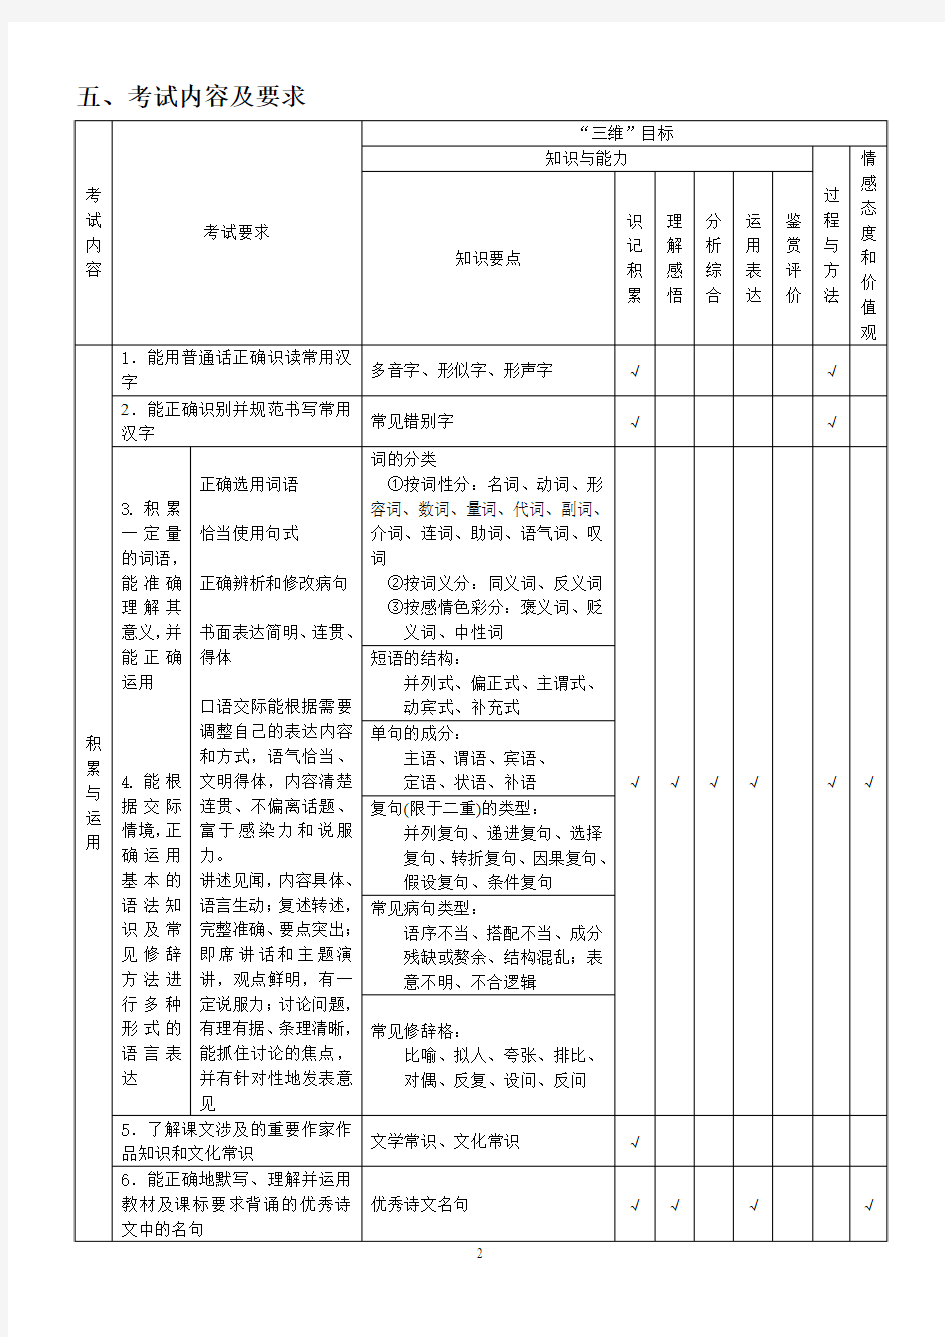 四川省二六年基础教育课程改革实验区